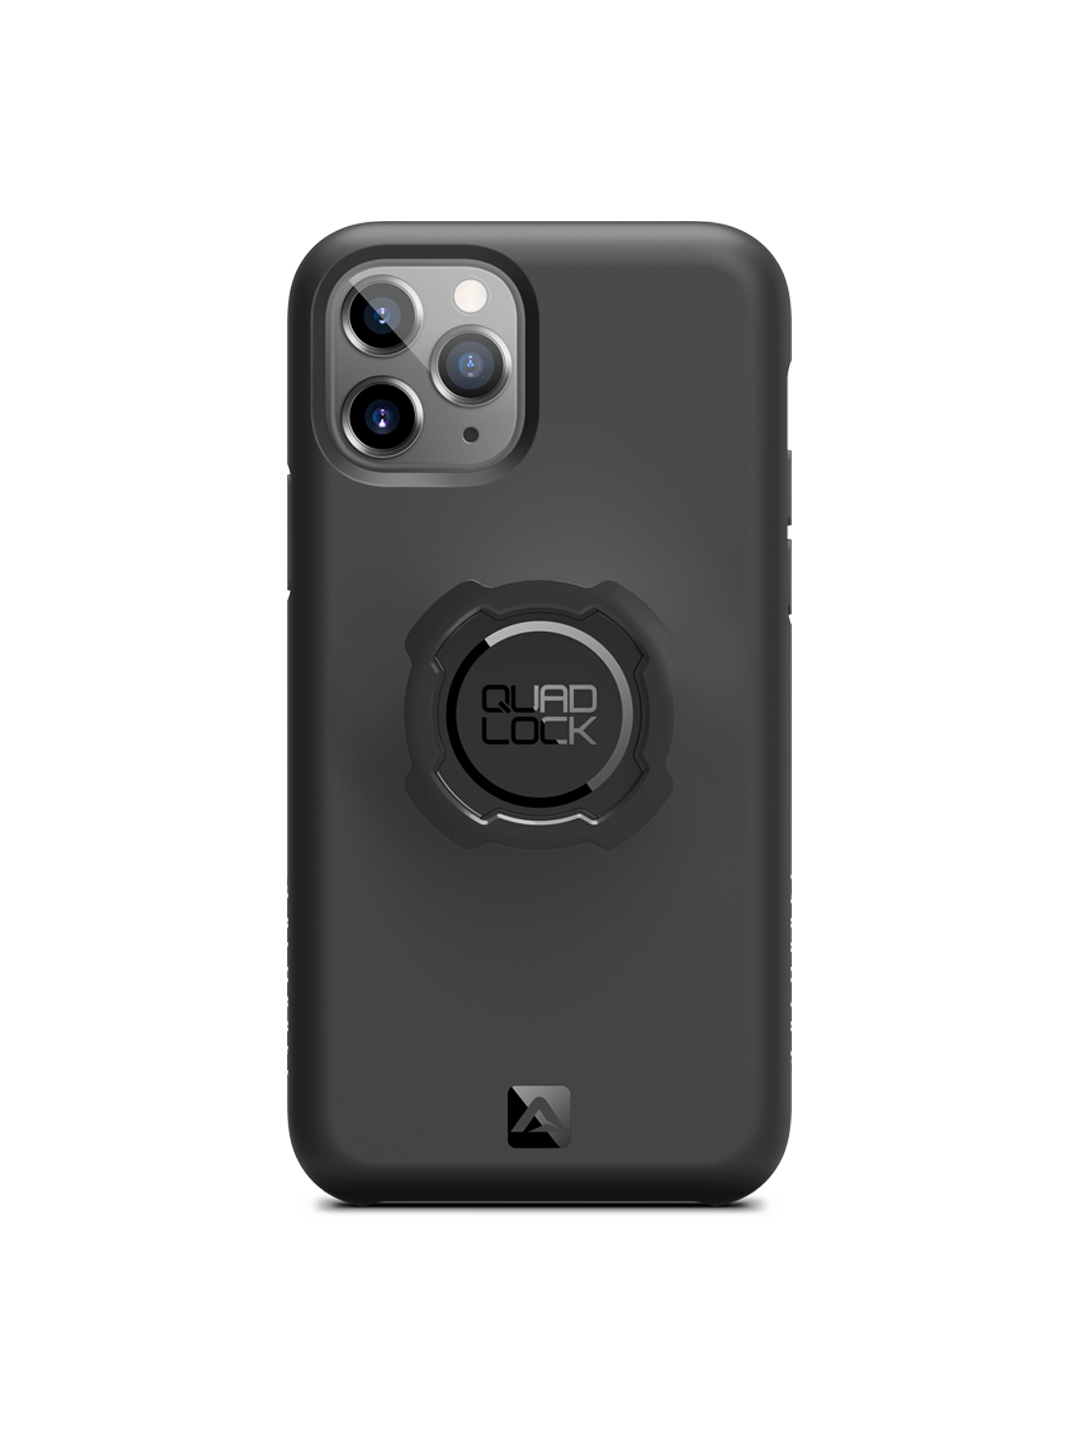 Quad Lock iPhone 11 Pro Phone Case 